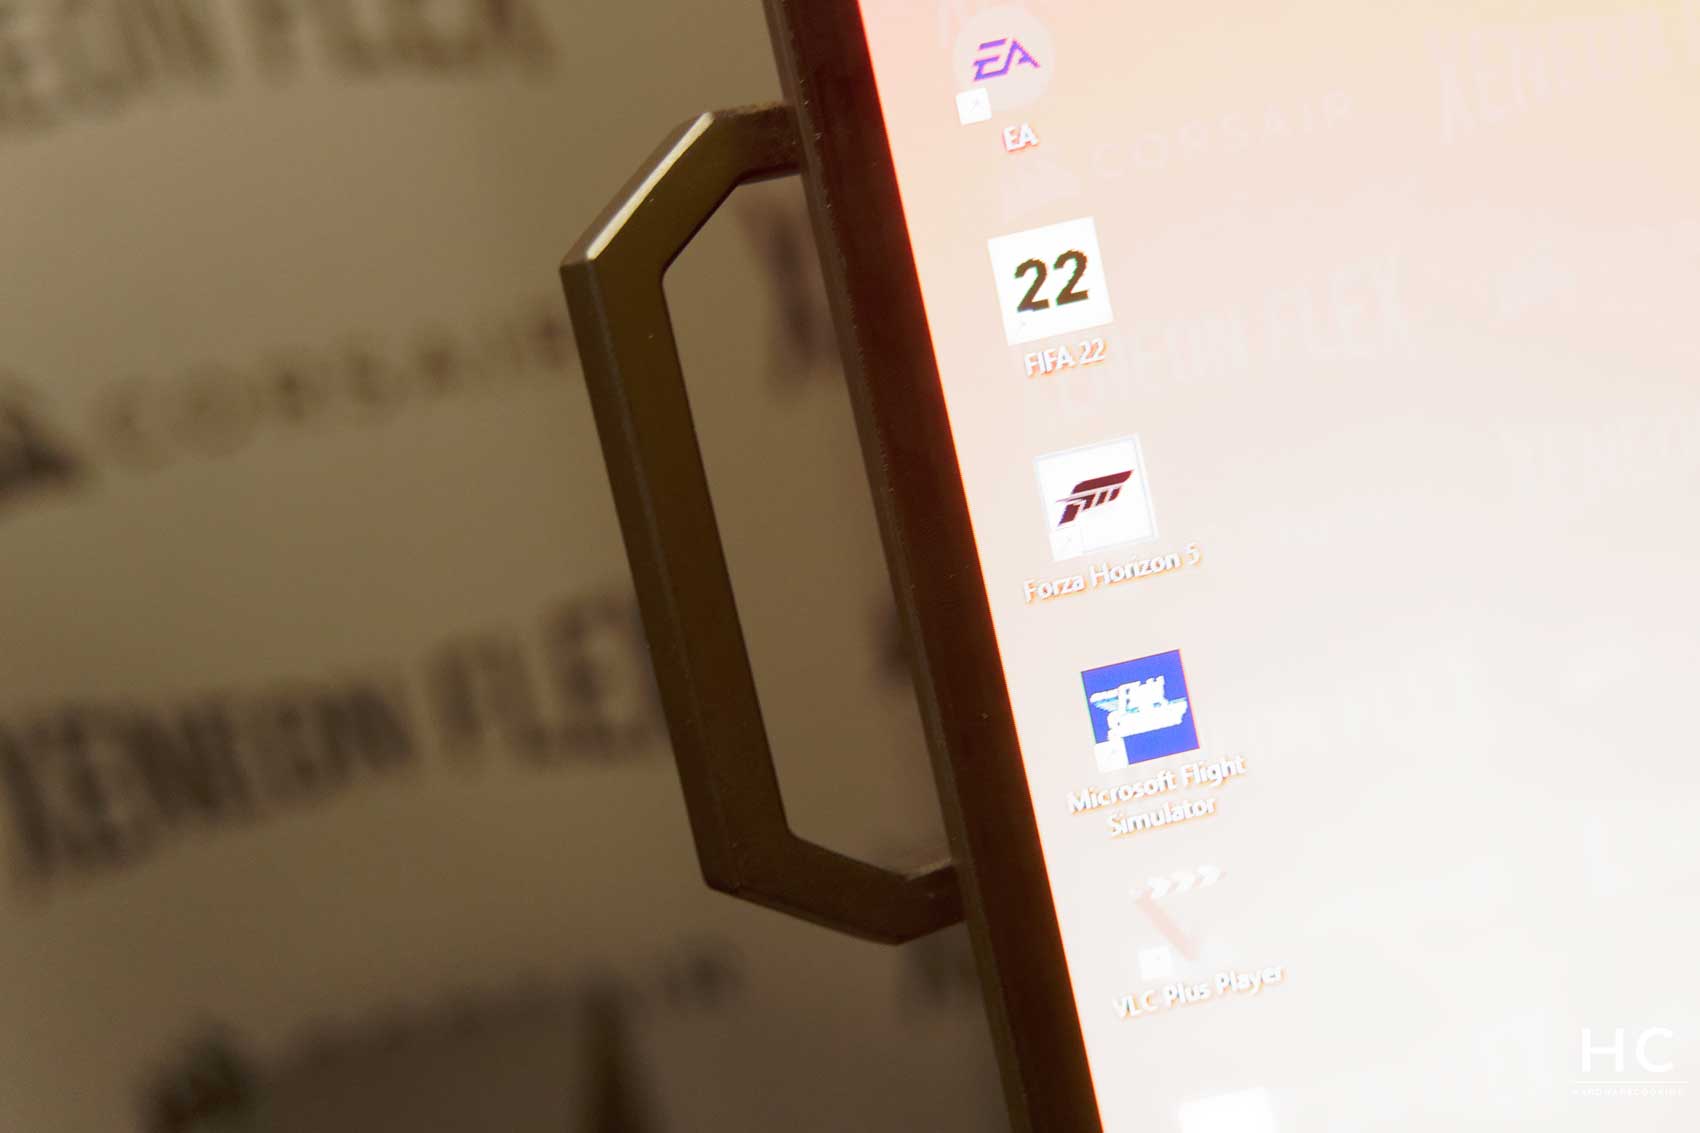 Plat ou incurvé : Corsair offre le meilleur des mondes avec son écran OLED  45 pouces incurvable